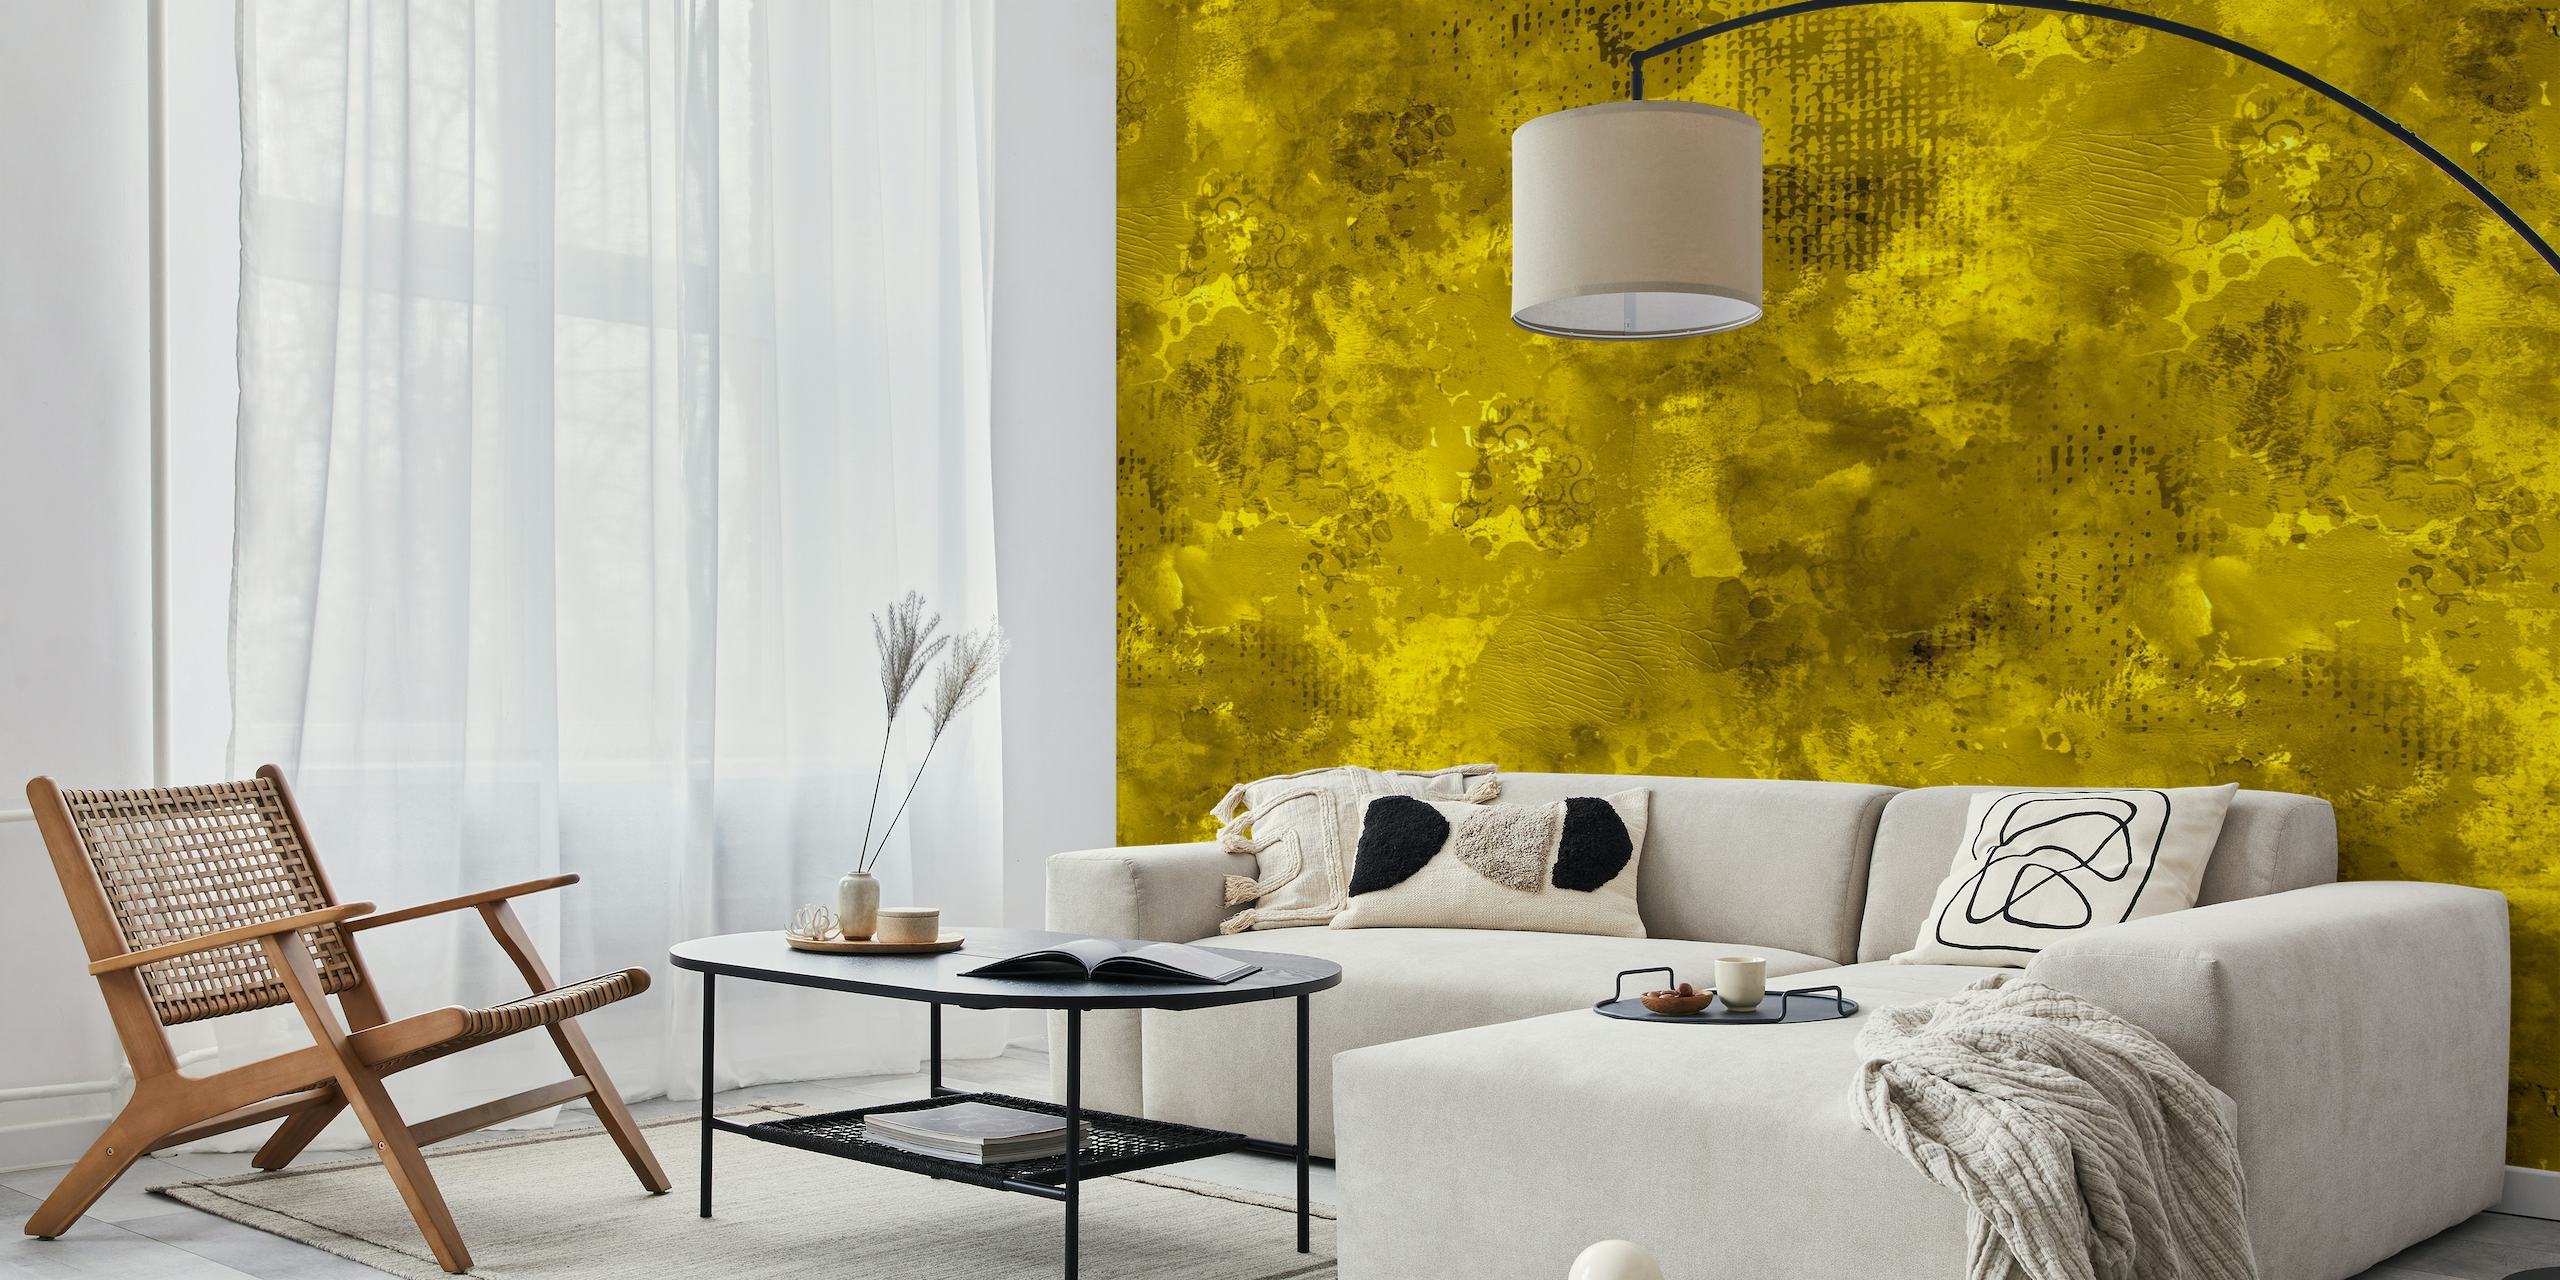 Mural de pared dinámico y audaz con textura de pintura amarilla abstracta moderna que crea una declaración visual vívida.